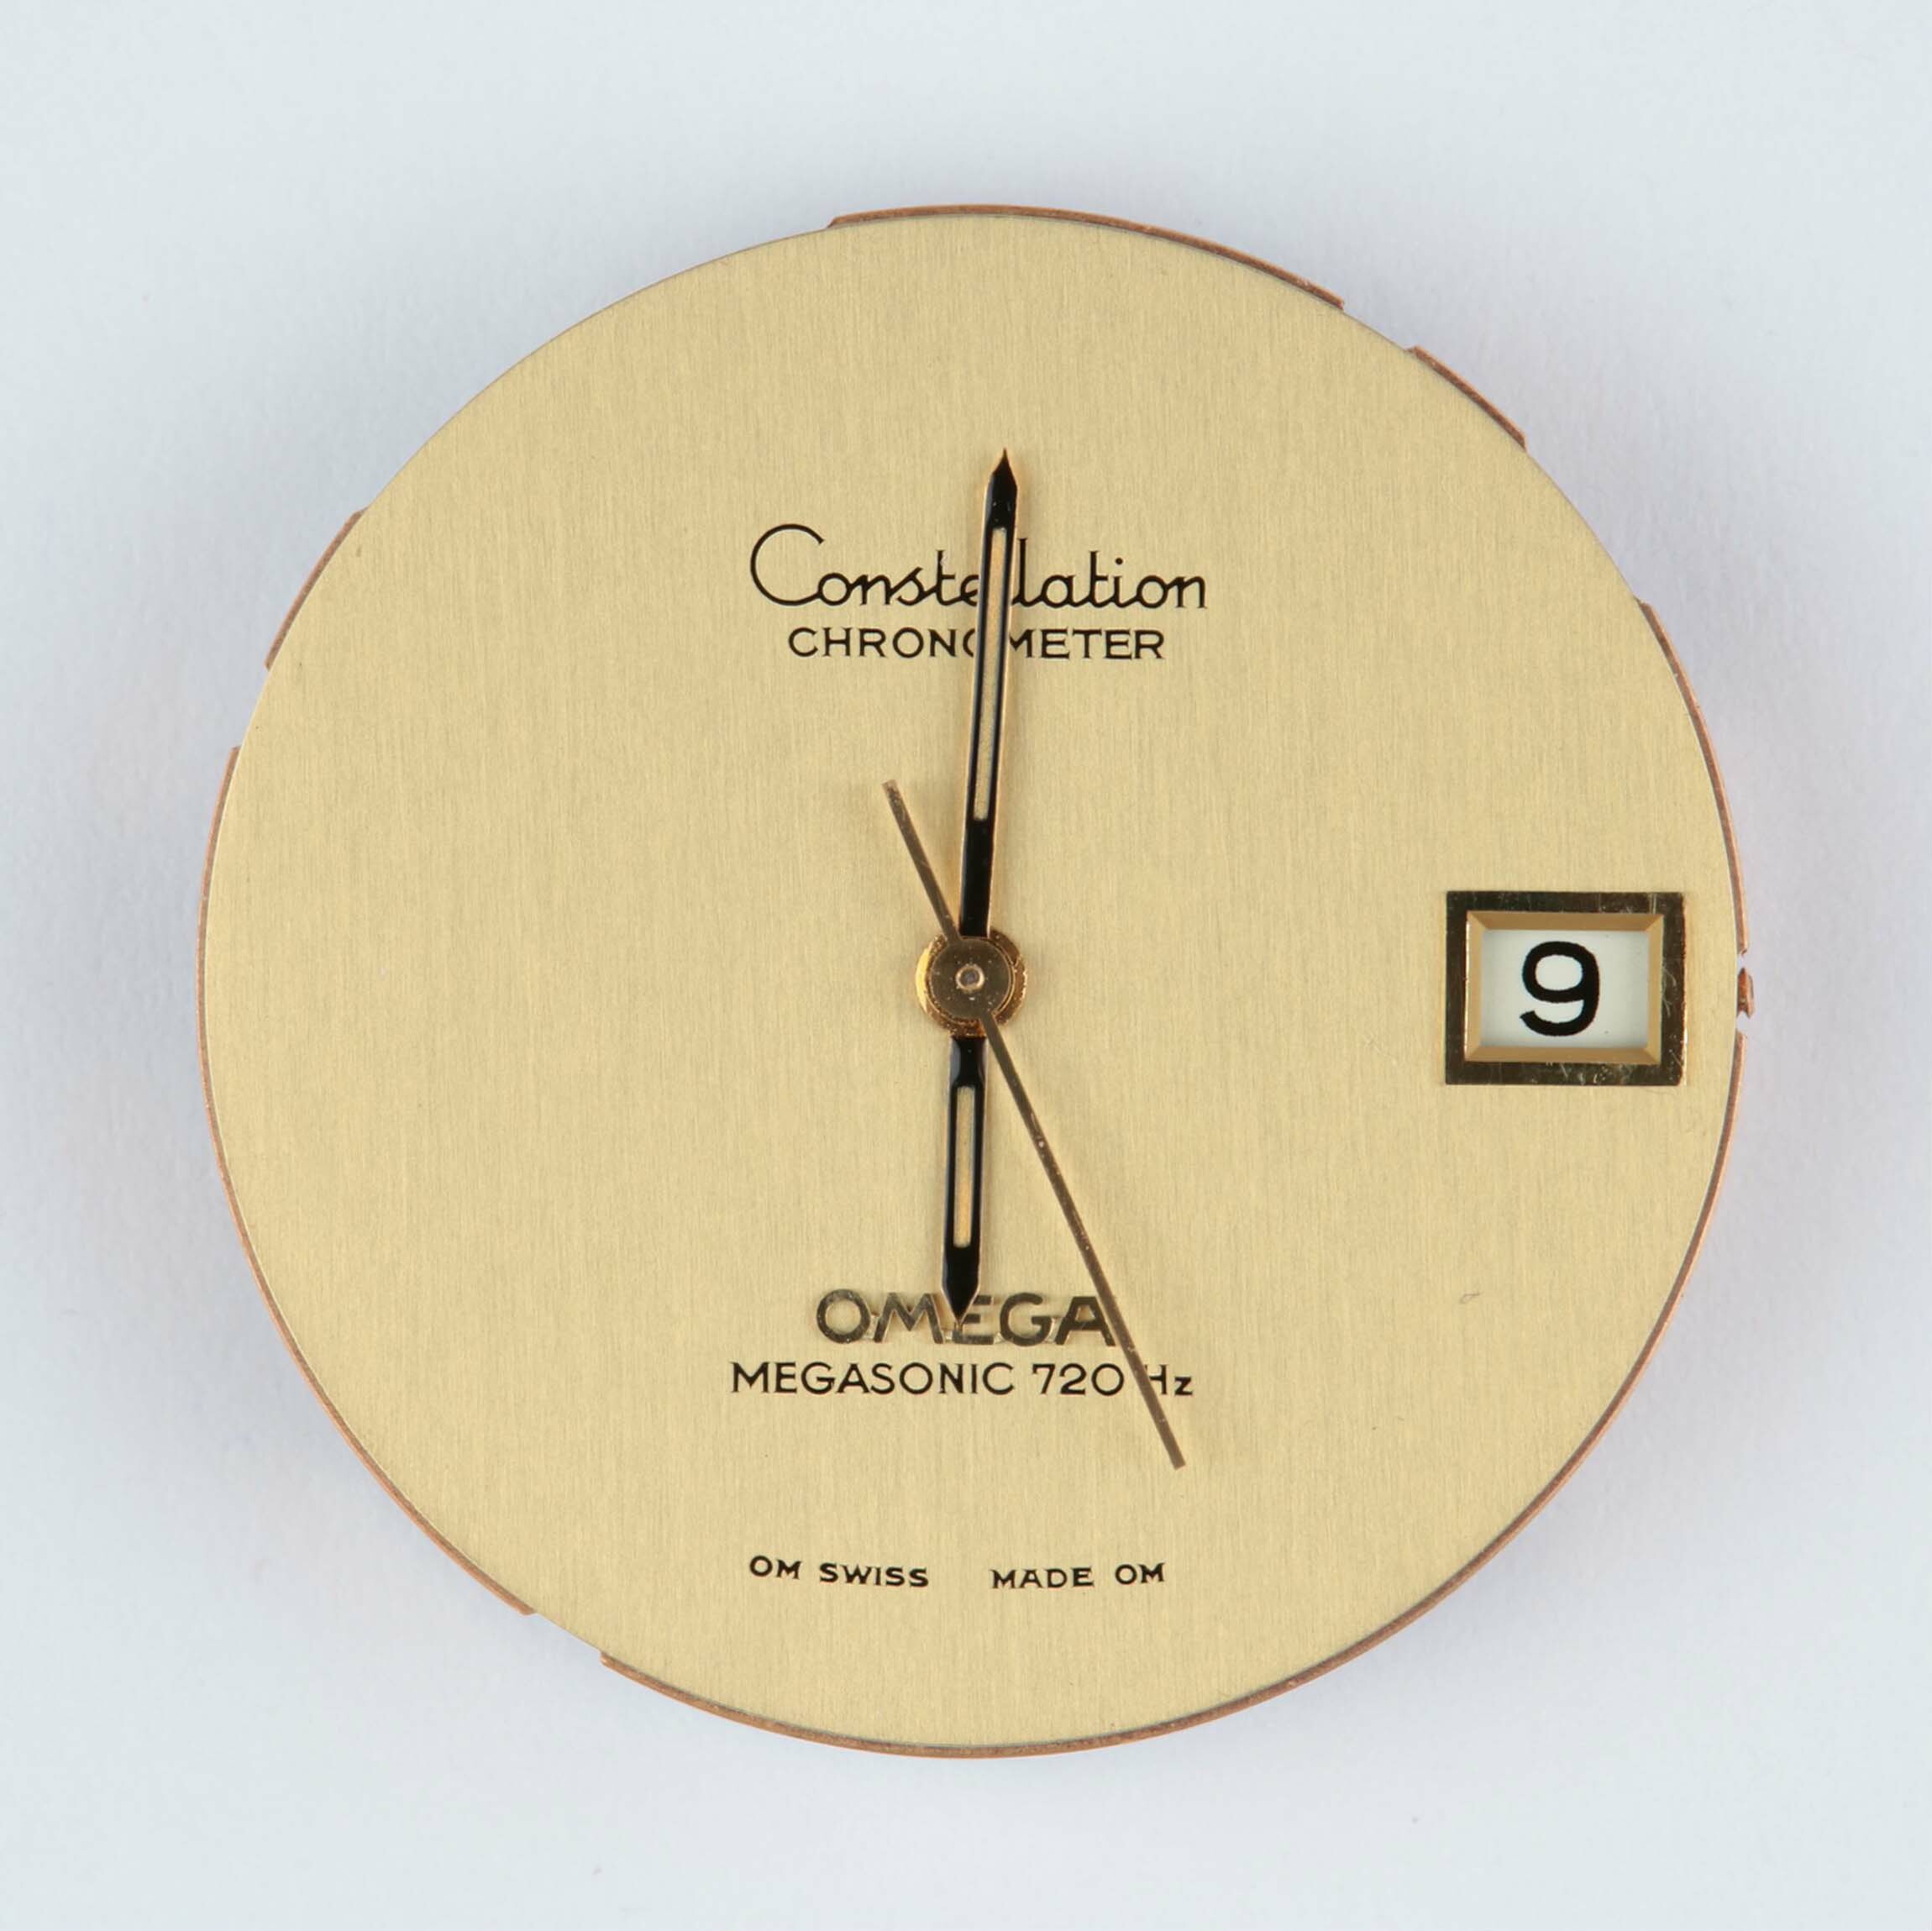 Armbanduhrwerk, Omega, Biel (CH), um 1973 (Deutsches Uhrenmuseum CC BY-SA)